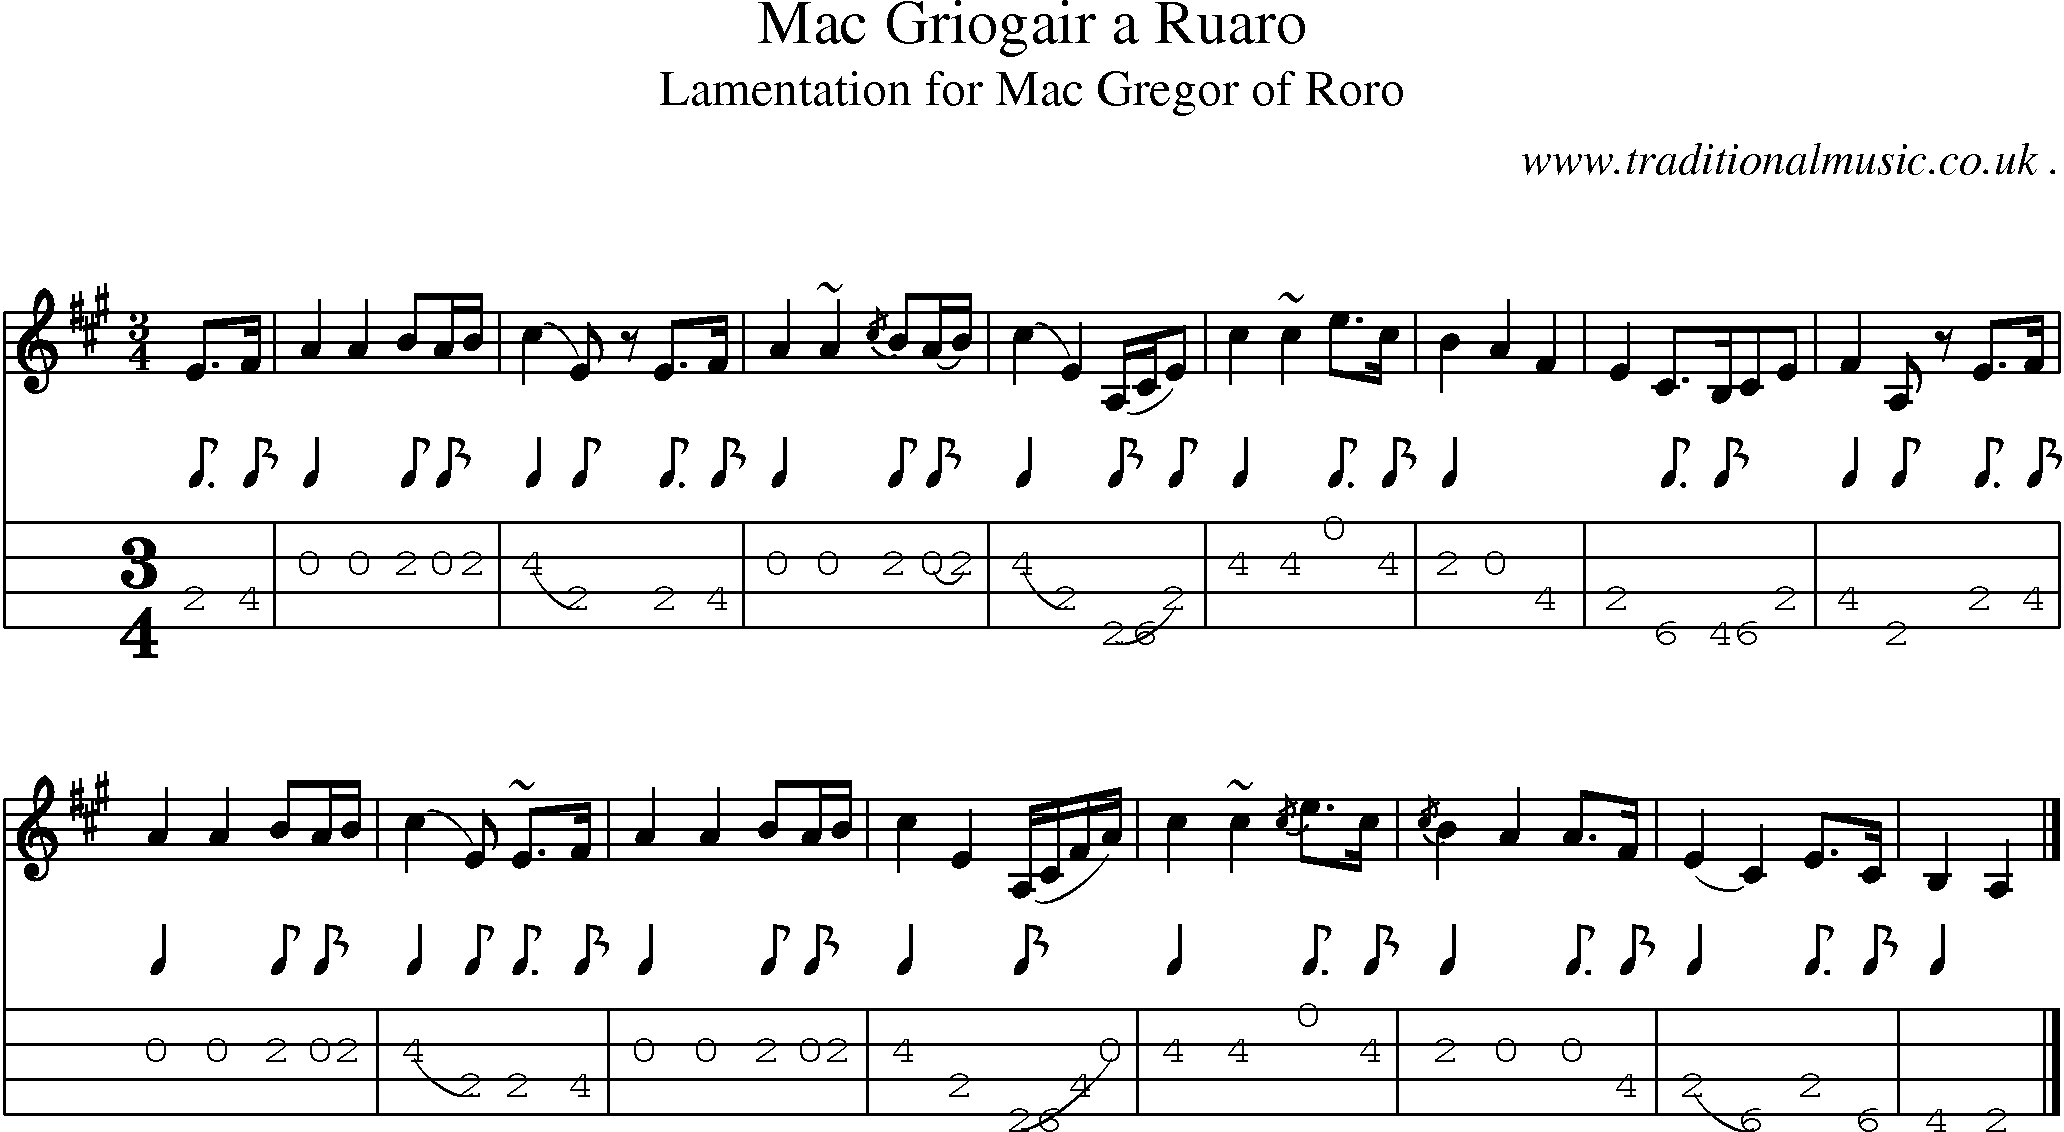 Sheet-music  score, Chords and Mandolin Tabs for Mac Griogair A Ruaro